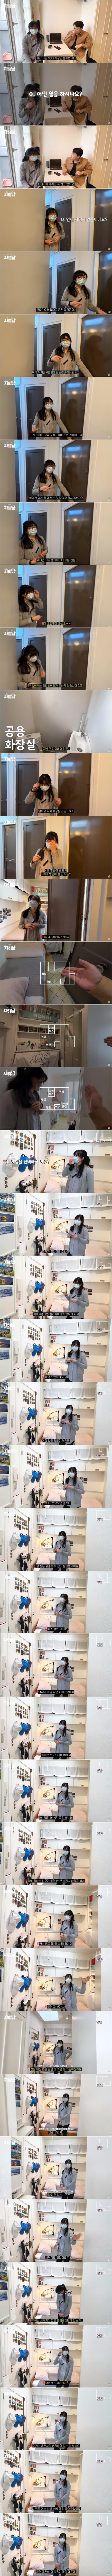 フランス·パリの映画のような風景に惚れて暮らしているという韓国のお姉さんの部屋を公開